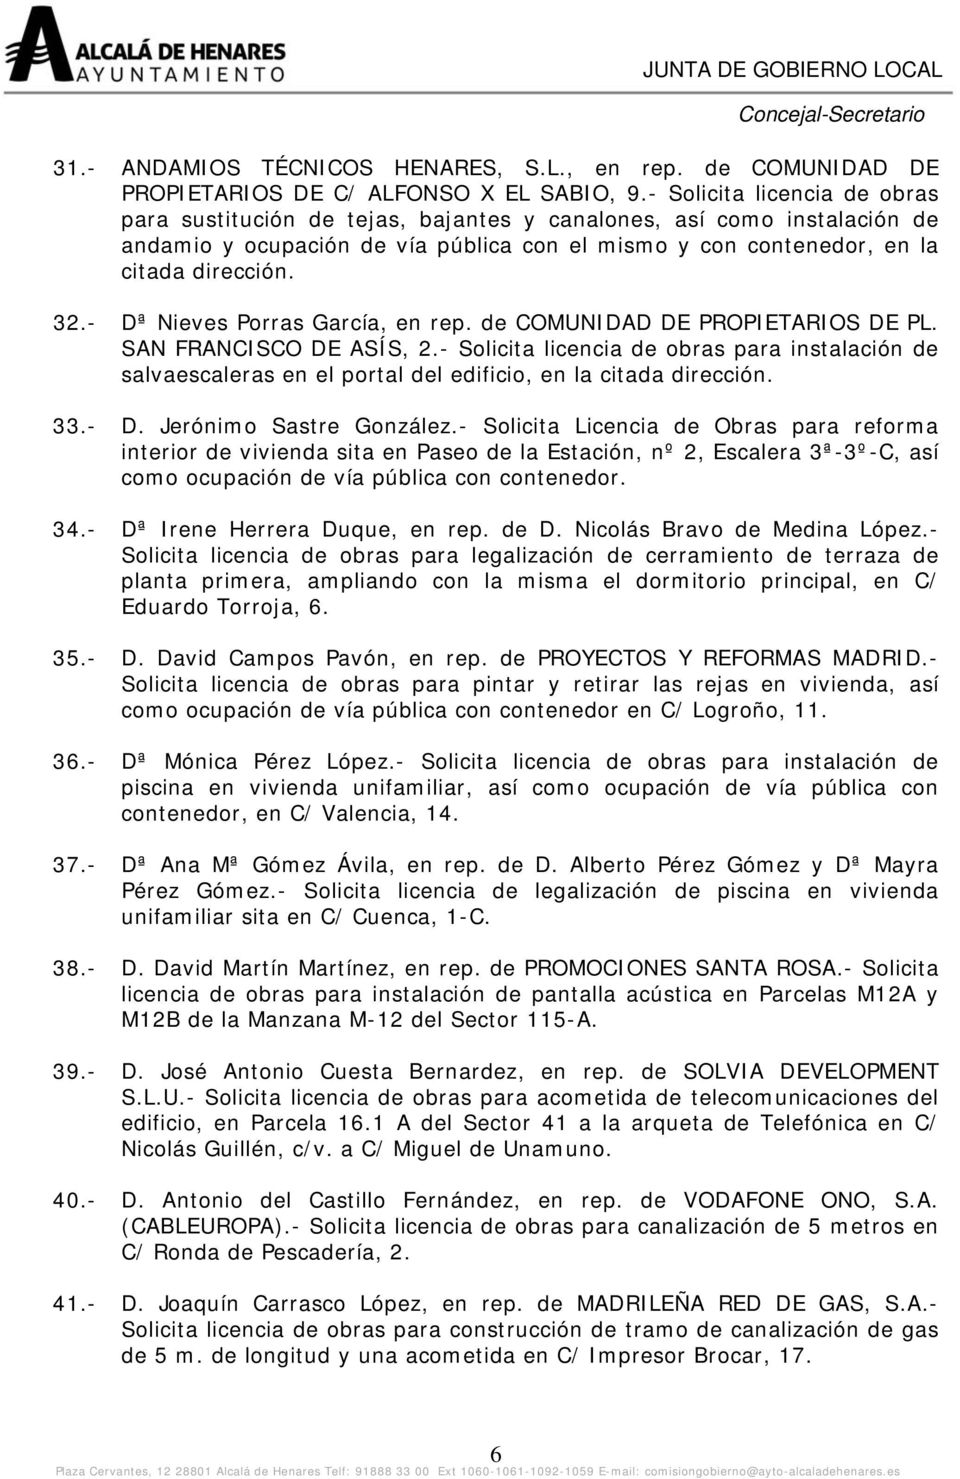 - Dª Nieves Porras García, en rep. de COMUNIDAD DE PROPIETARIOS DE PL. SAN FRANCISCO DE ASÍS, 2.